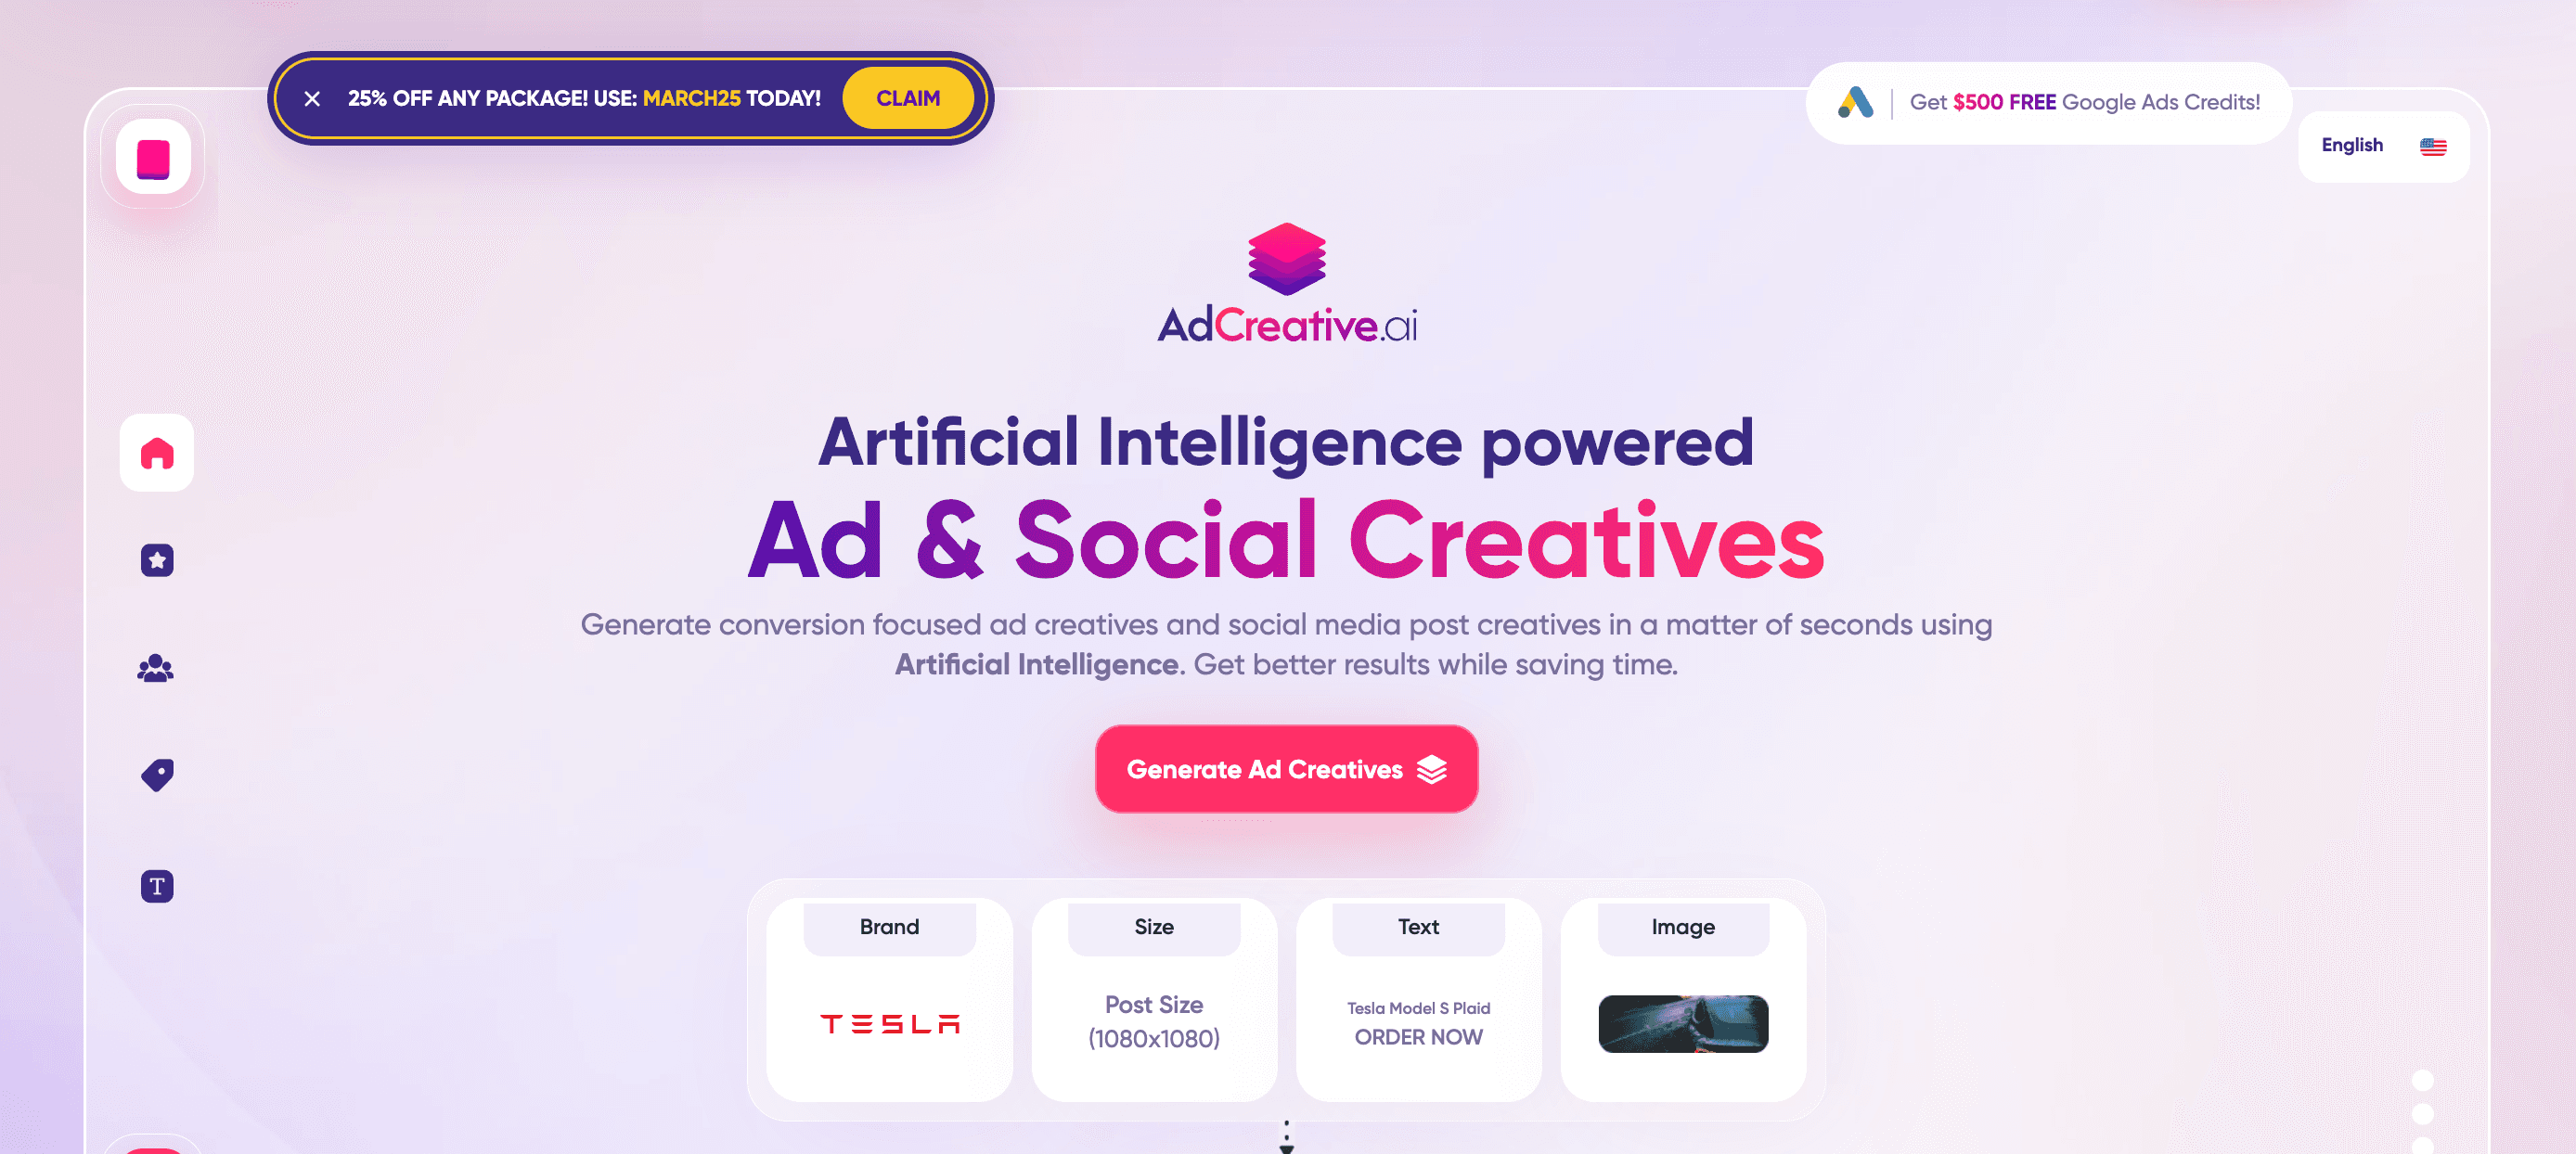 AdCreative AI Software